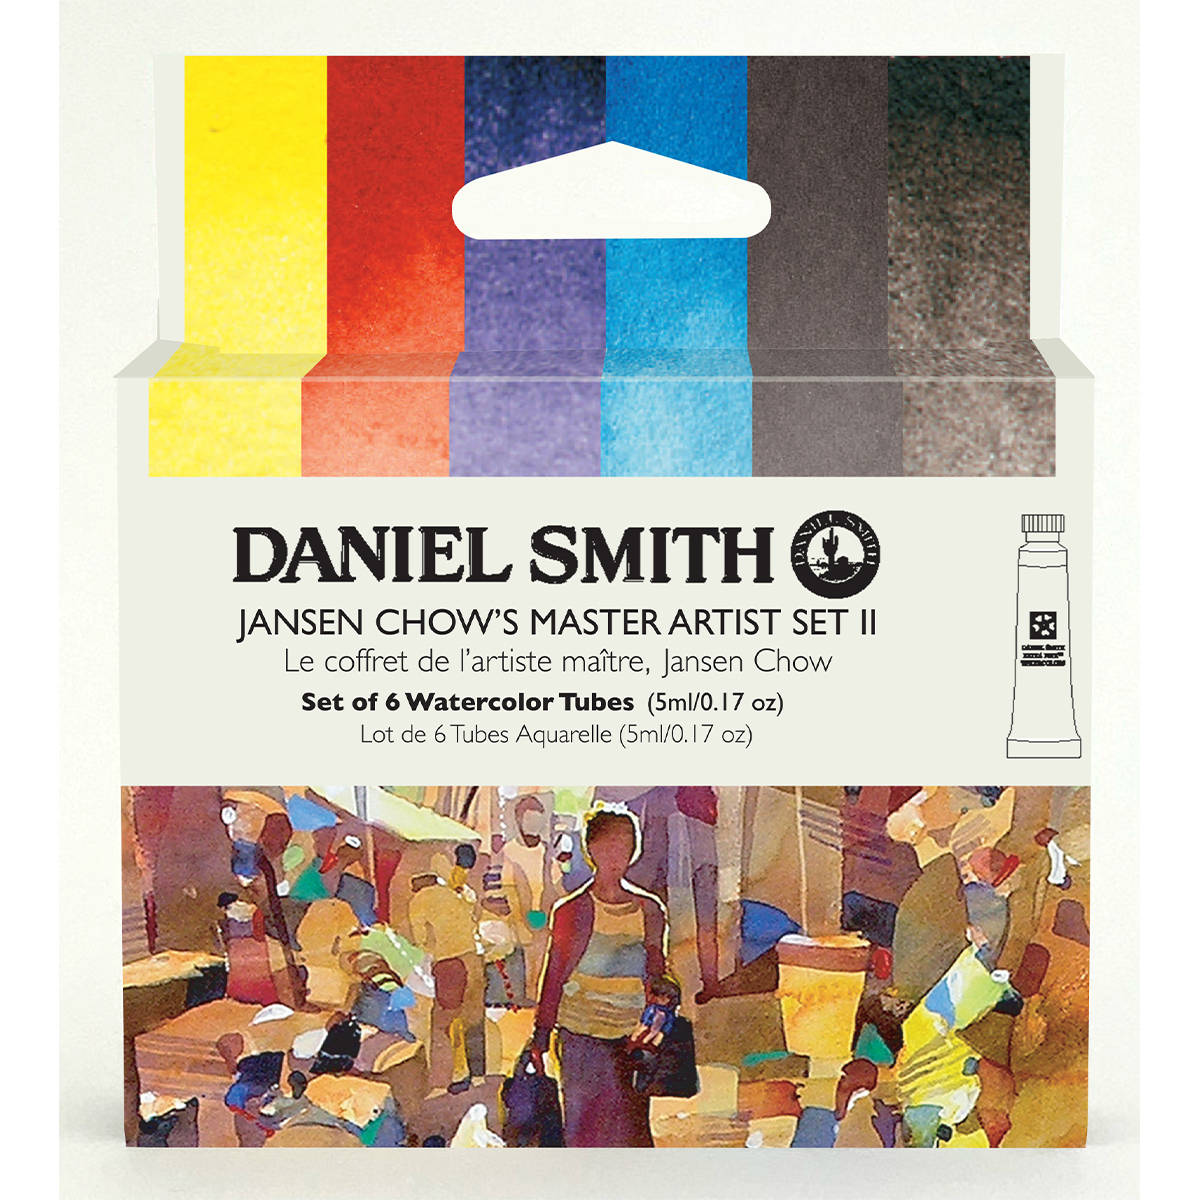 DANIEL SMITH ジャンセン 今だけスーパーセール限定 チャウマスターアーティストセットII 6色 ダニエル 定価 スミス 5mlチューブ 水彩絵具 セット